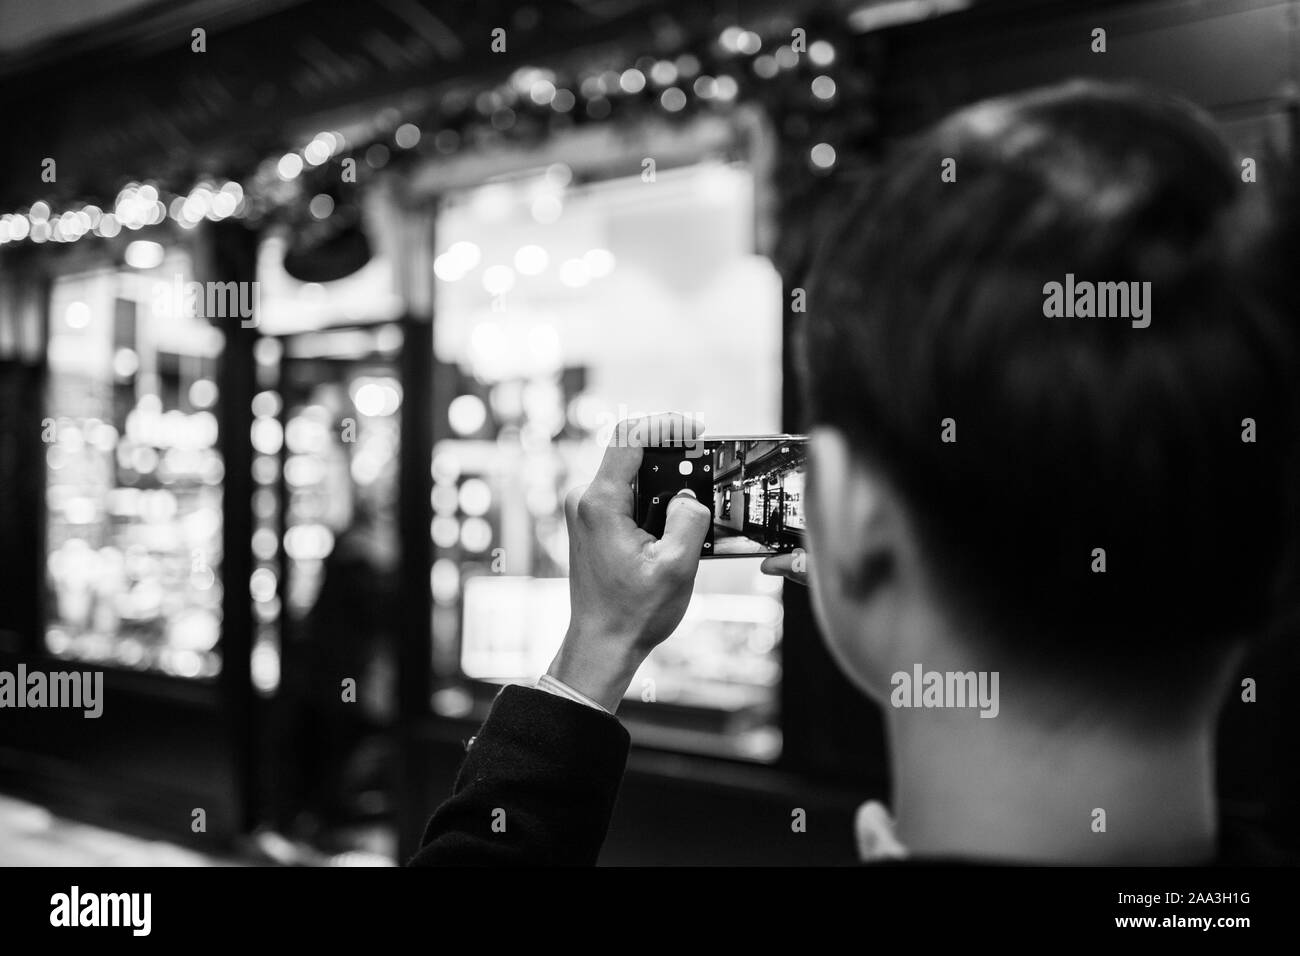 Strasburgo, Francia - Nov 23, 2017: vista posteriore di uomo adulto prendendo fotografie dell'illuminato e decorate vetrina ingresso della tradizionale francese Foto Stock